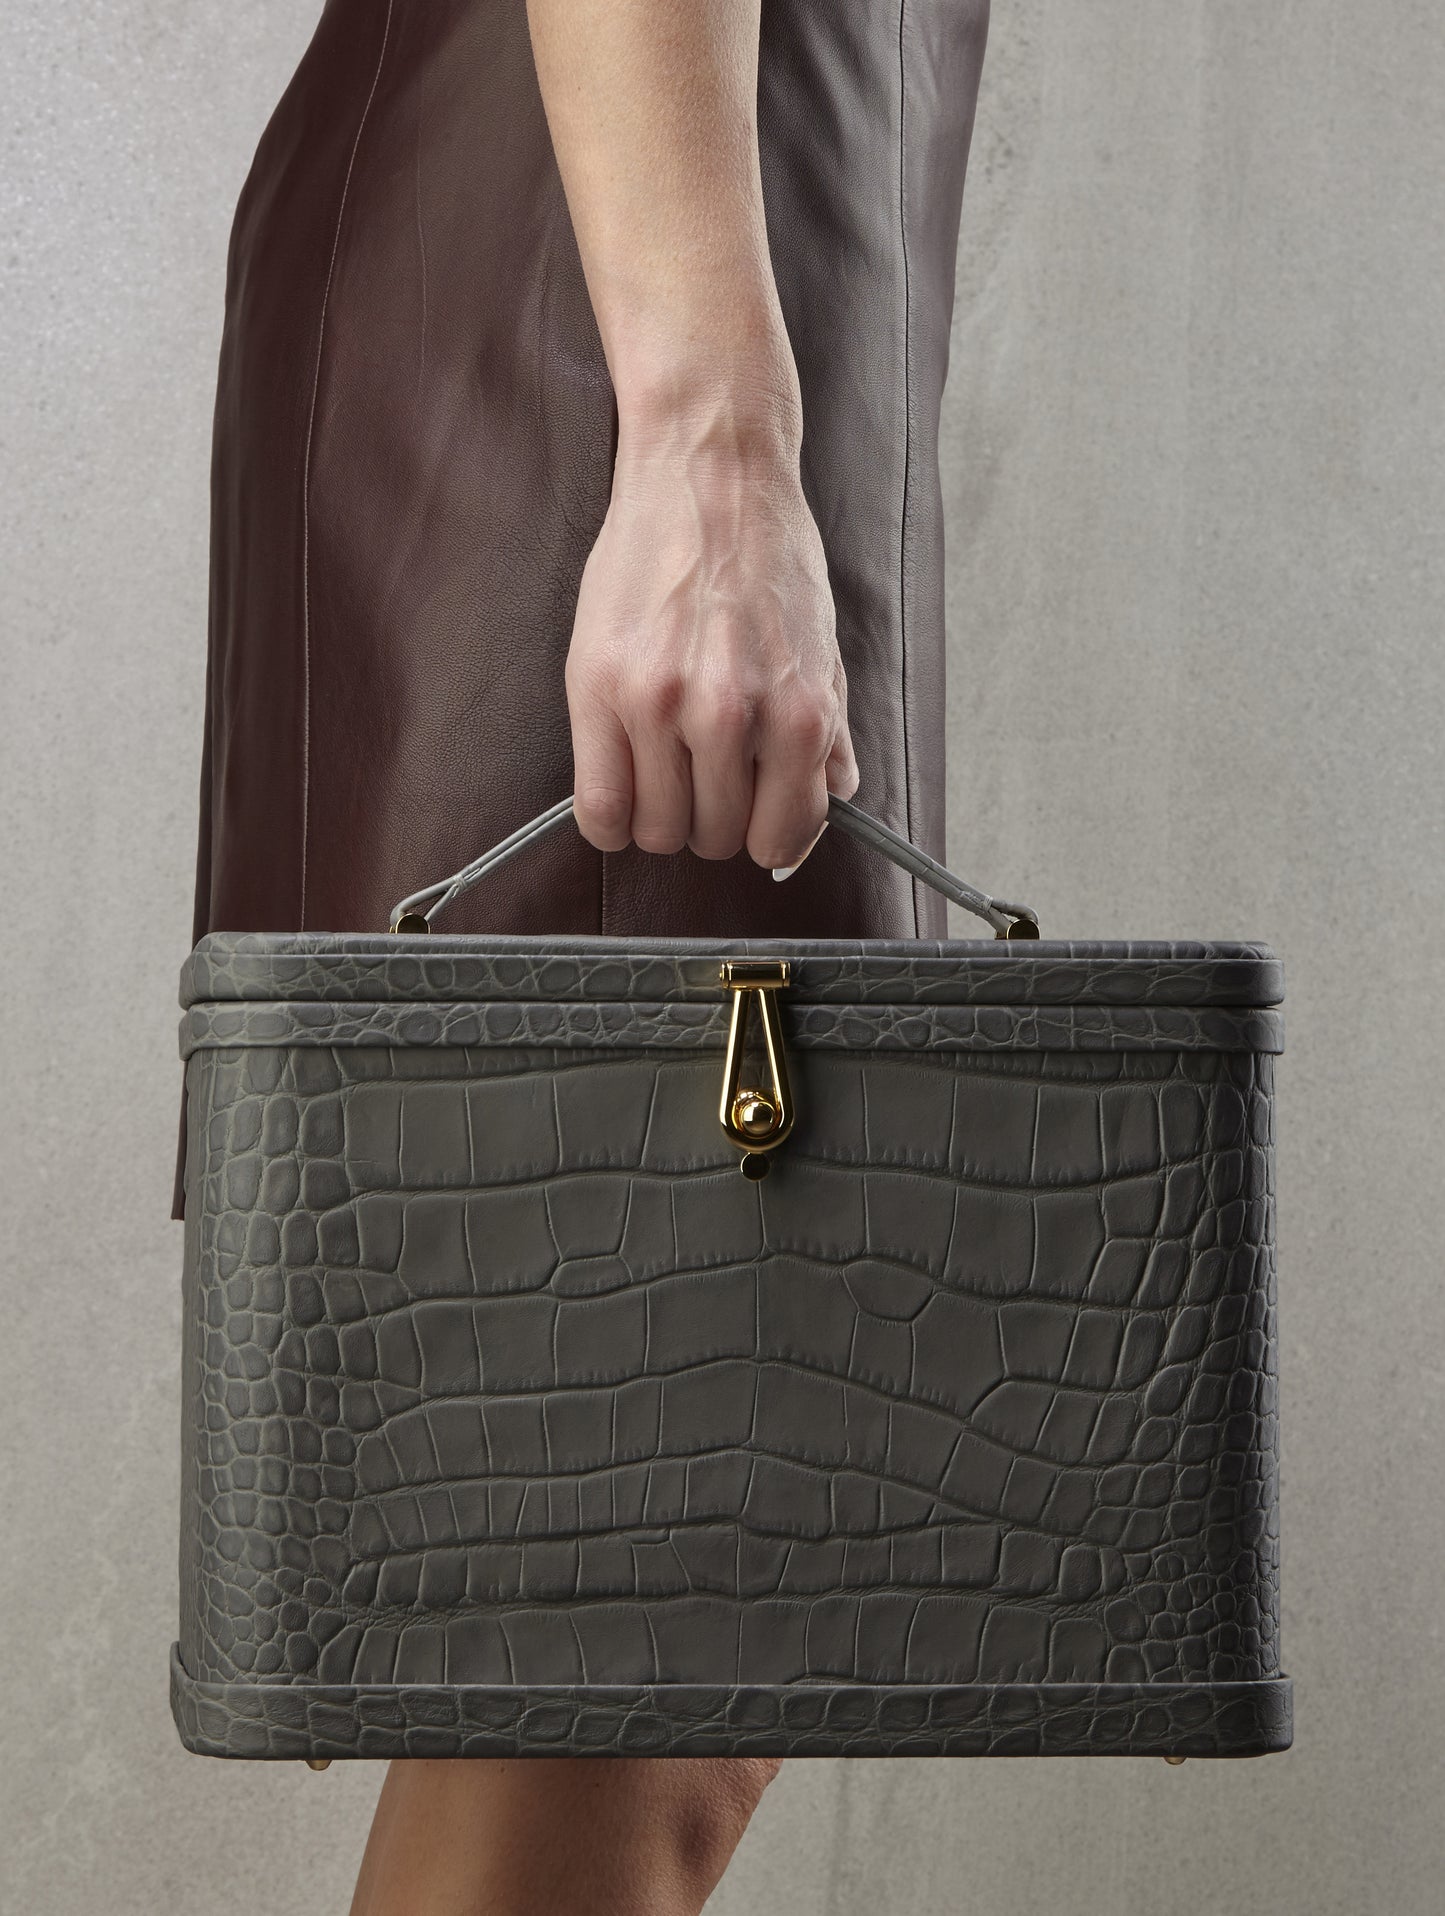 Atelier Verdi large grey crocodile print leather vanity case held by model